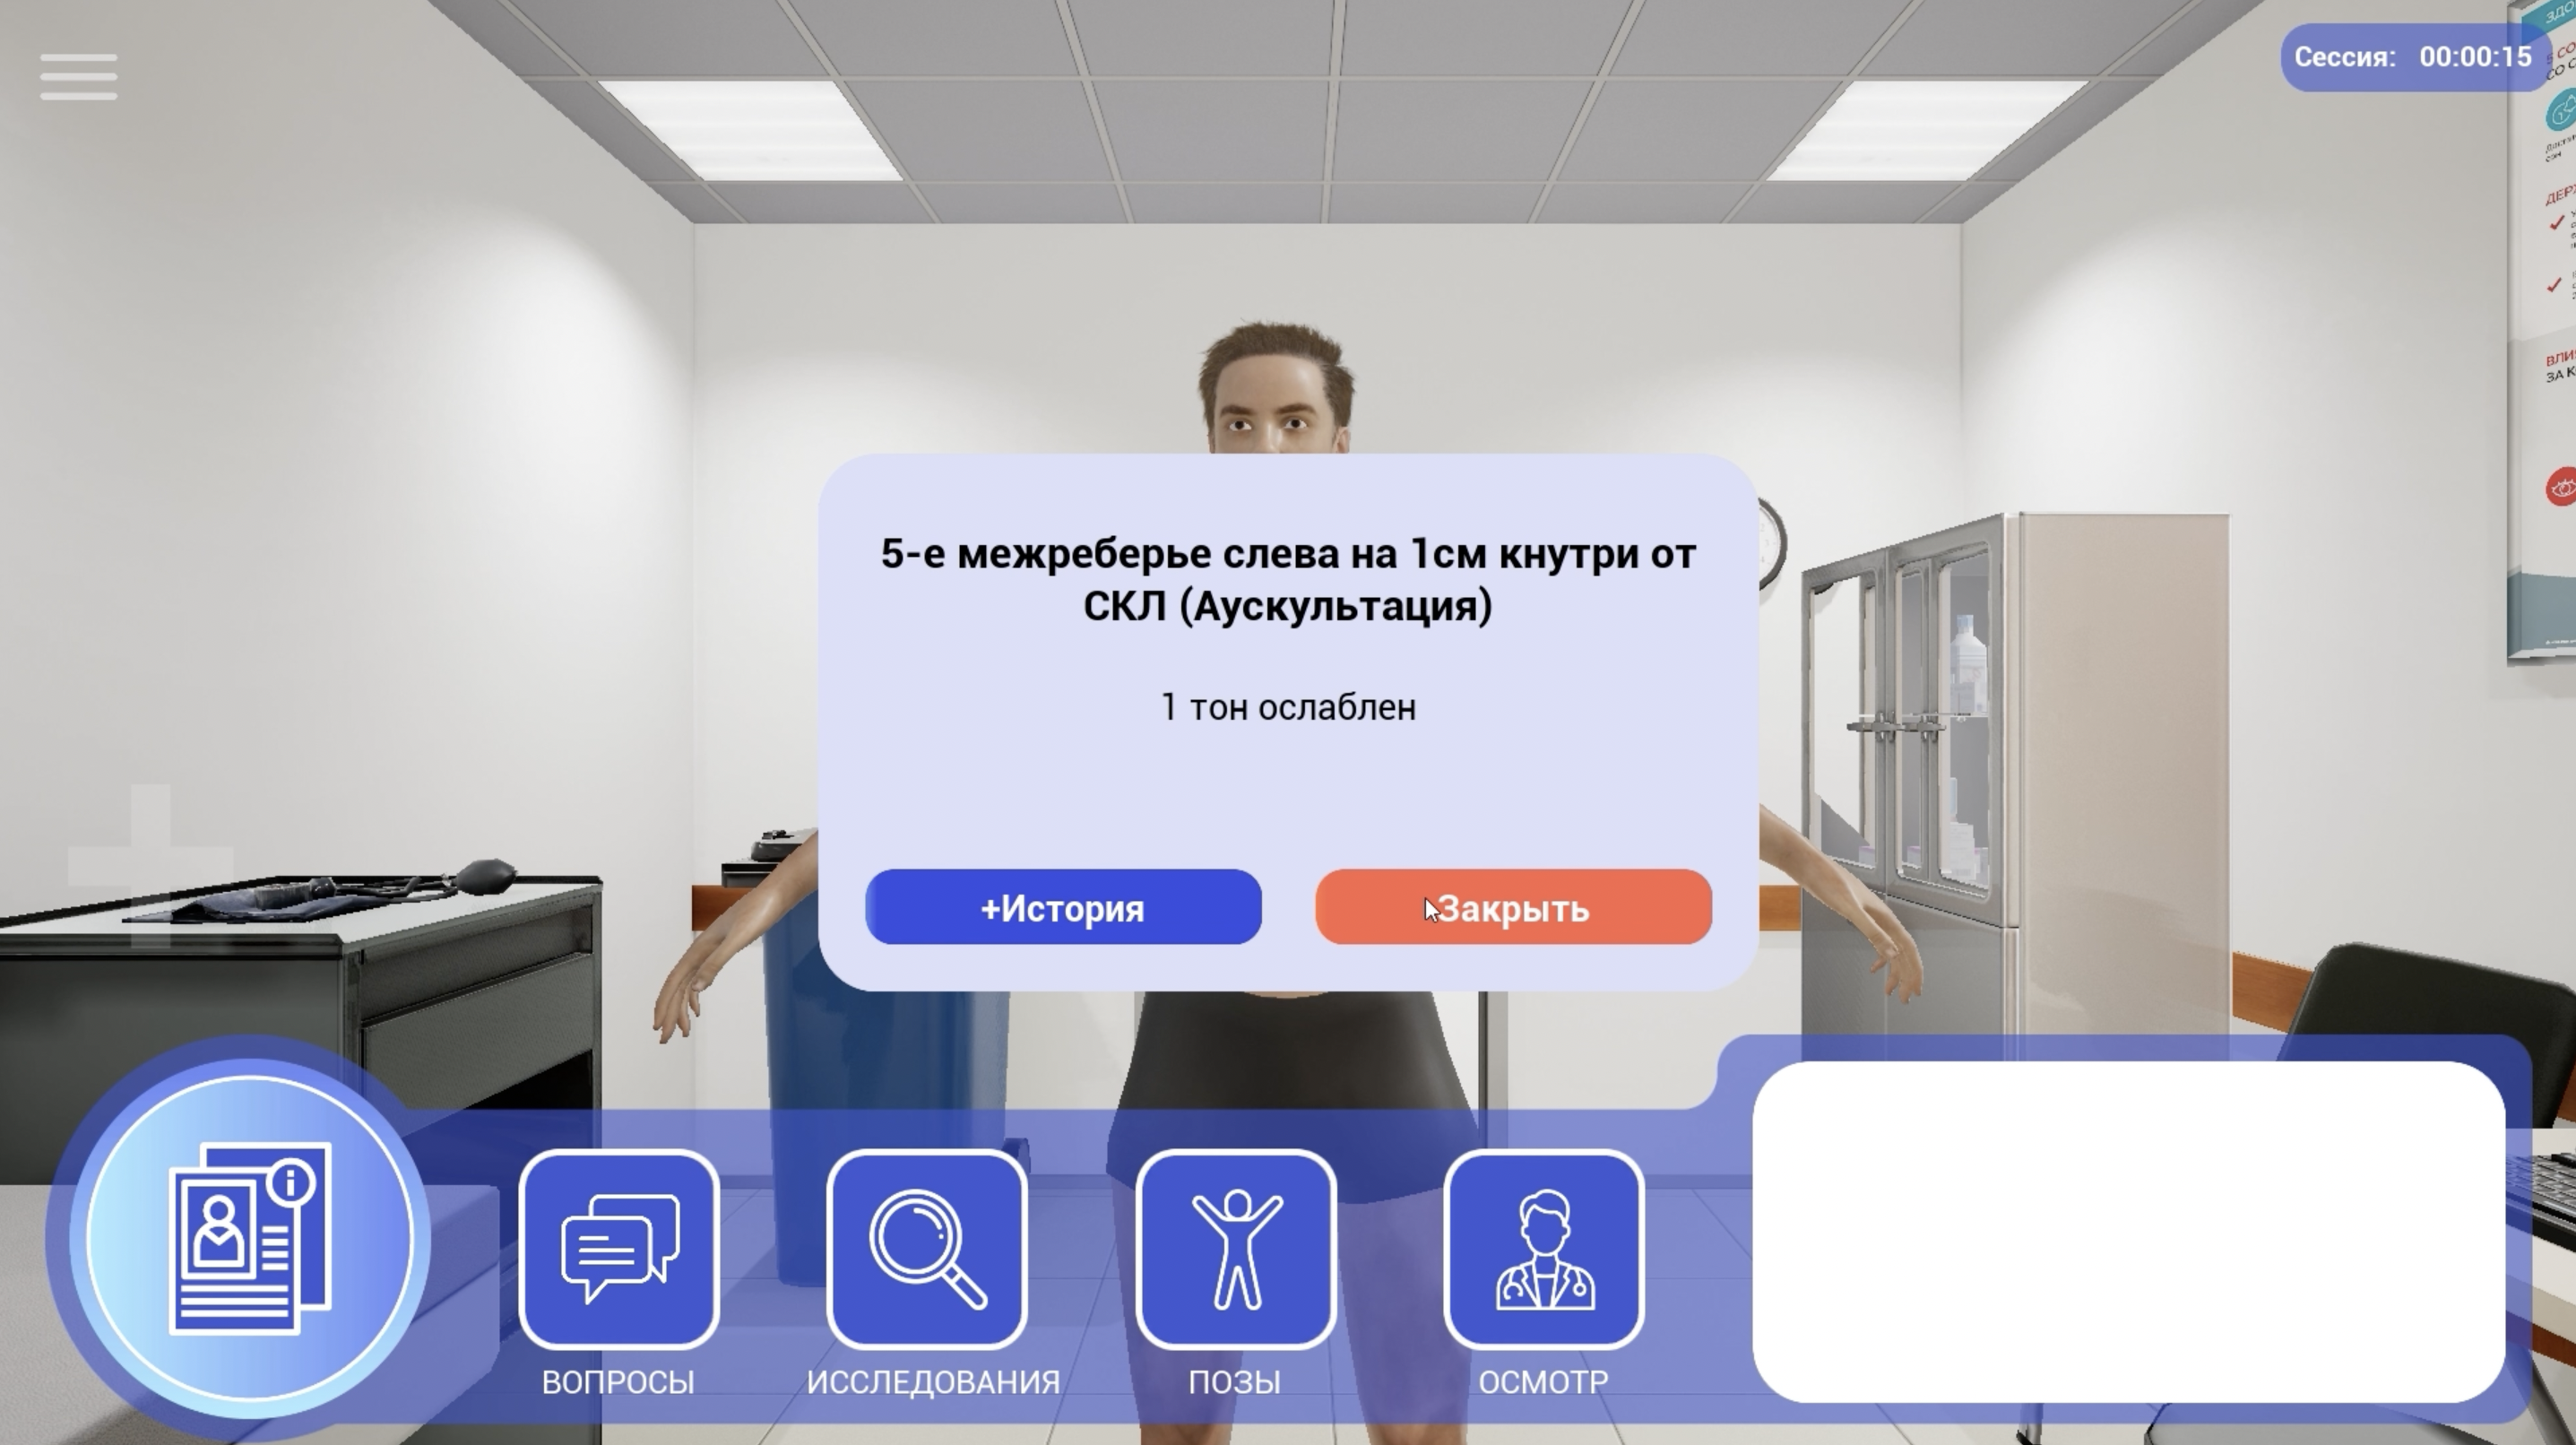 Компания ITDILAB в тесном сотрудничестве с компанией VIDEOSFERA представляют вашему вниманию интерактивный медицинский симулятор